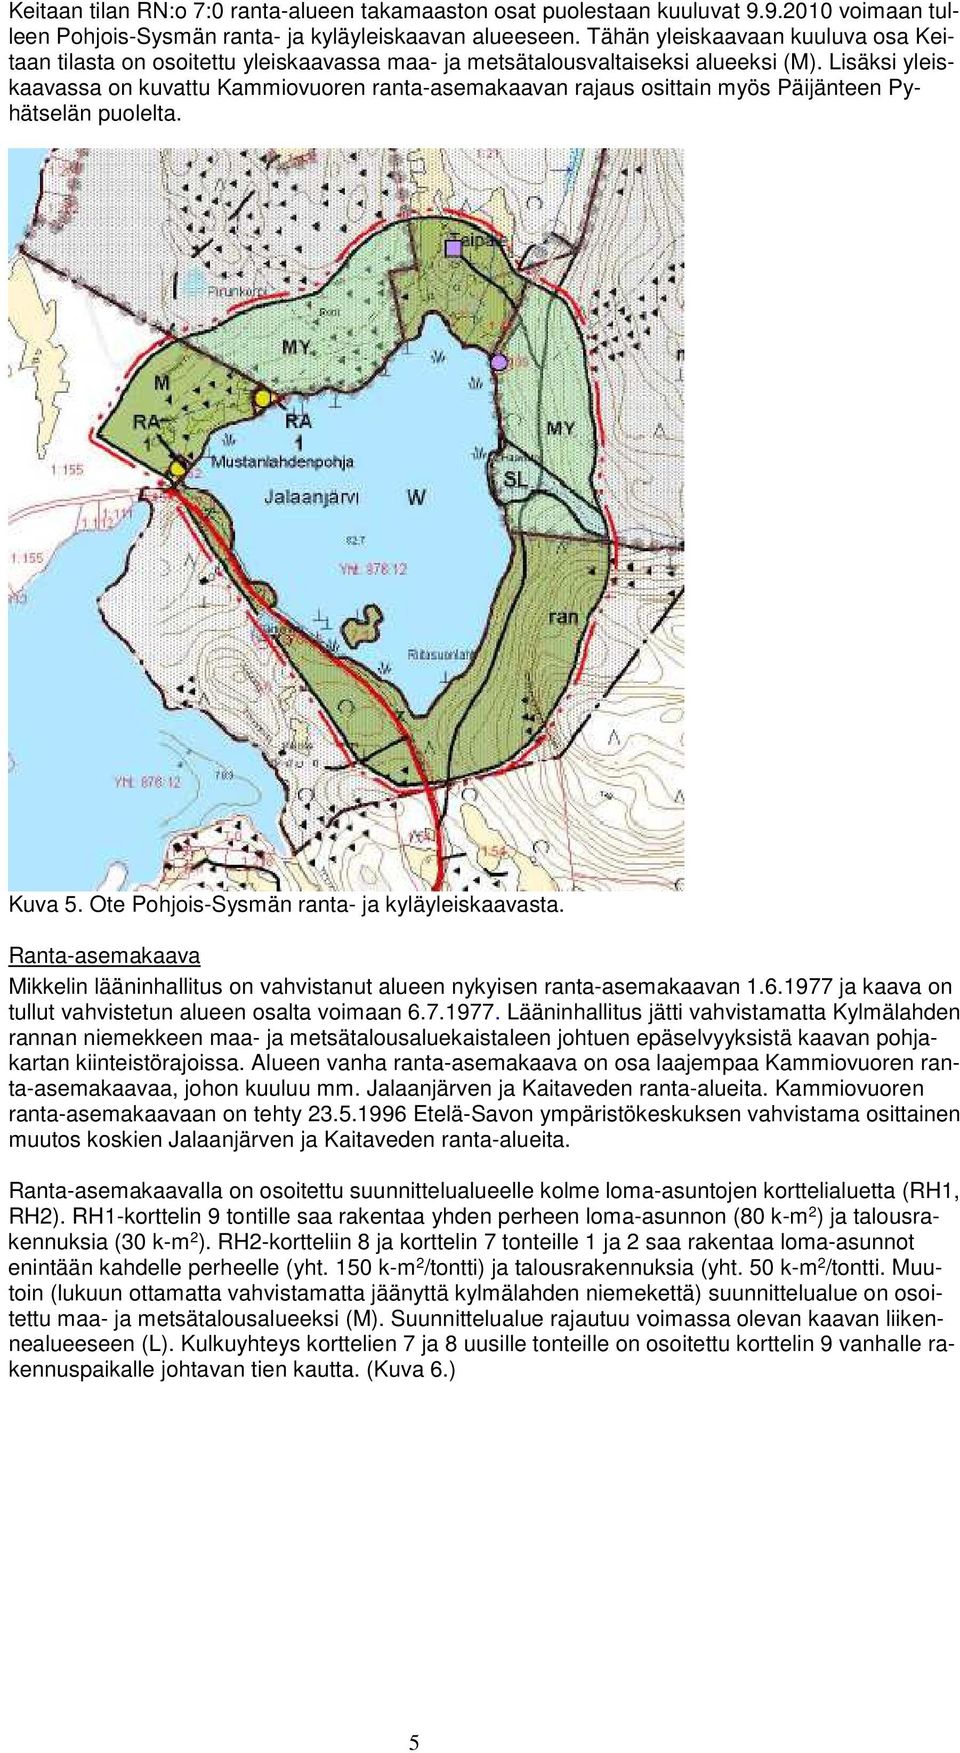 Lisäksi yleiskaavassa on kuvattu Kammiovuoren ranta-asemakaavan rajaus osittain myös Päijänteen Pyhätselän puolelta. Kuva 5. Ote Pohjois-Sysmän ranta- ja kyläyleiskaavasta.